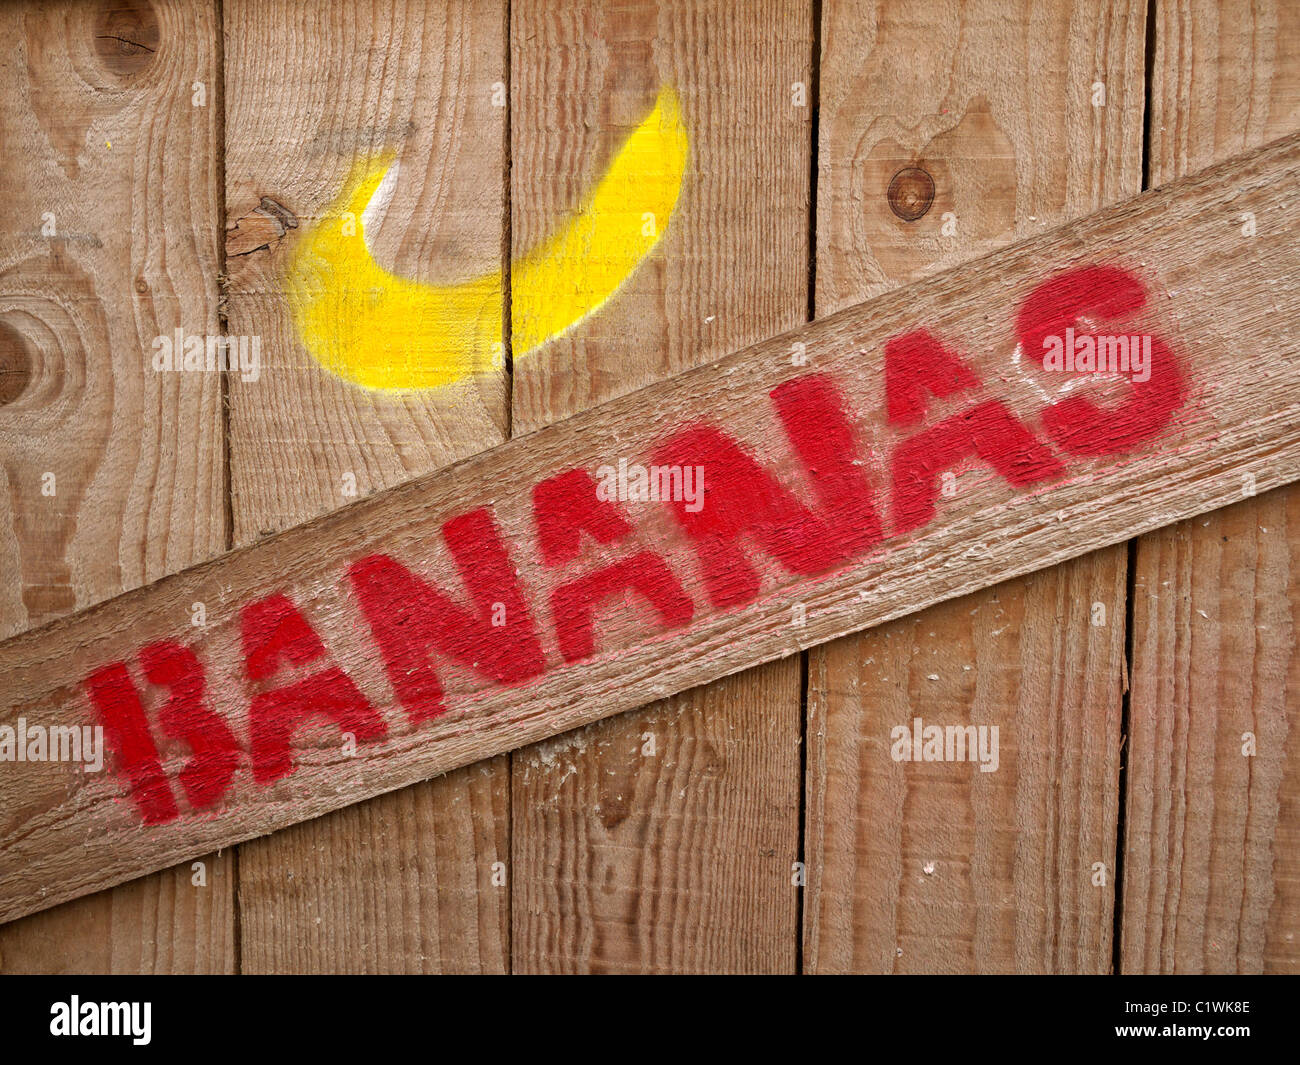 Scatole di banana immagini e fotografie stock ad alta risoluzione - Alamy